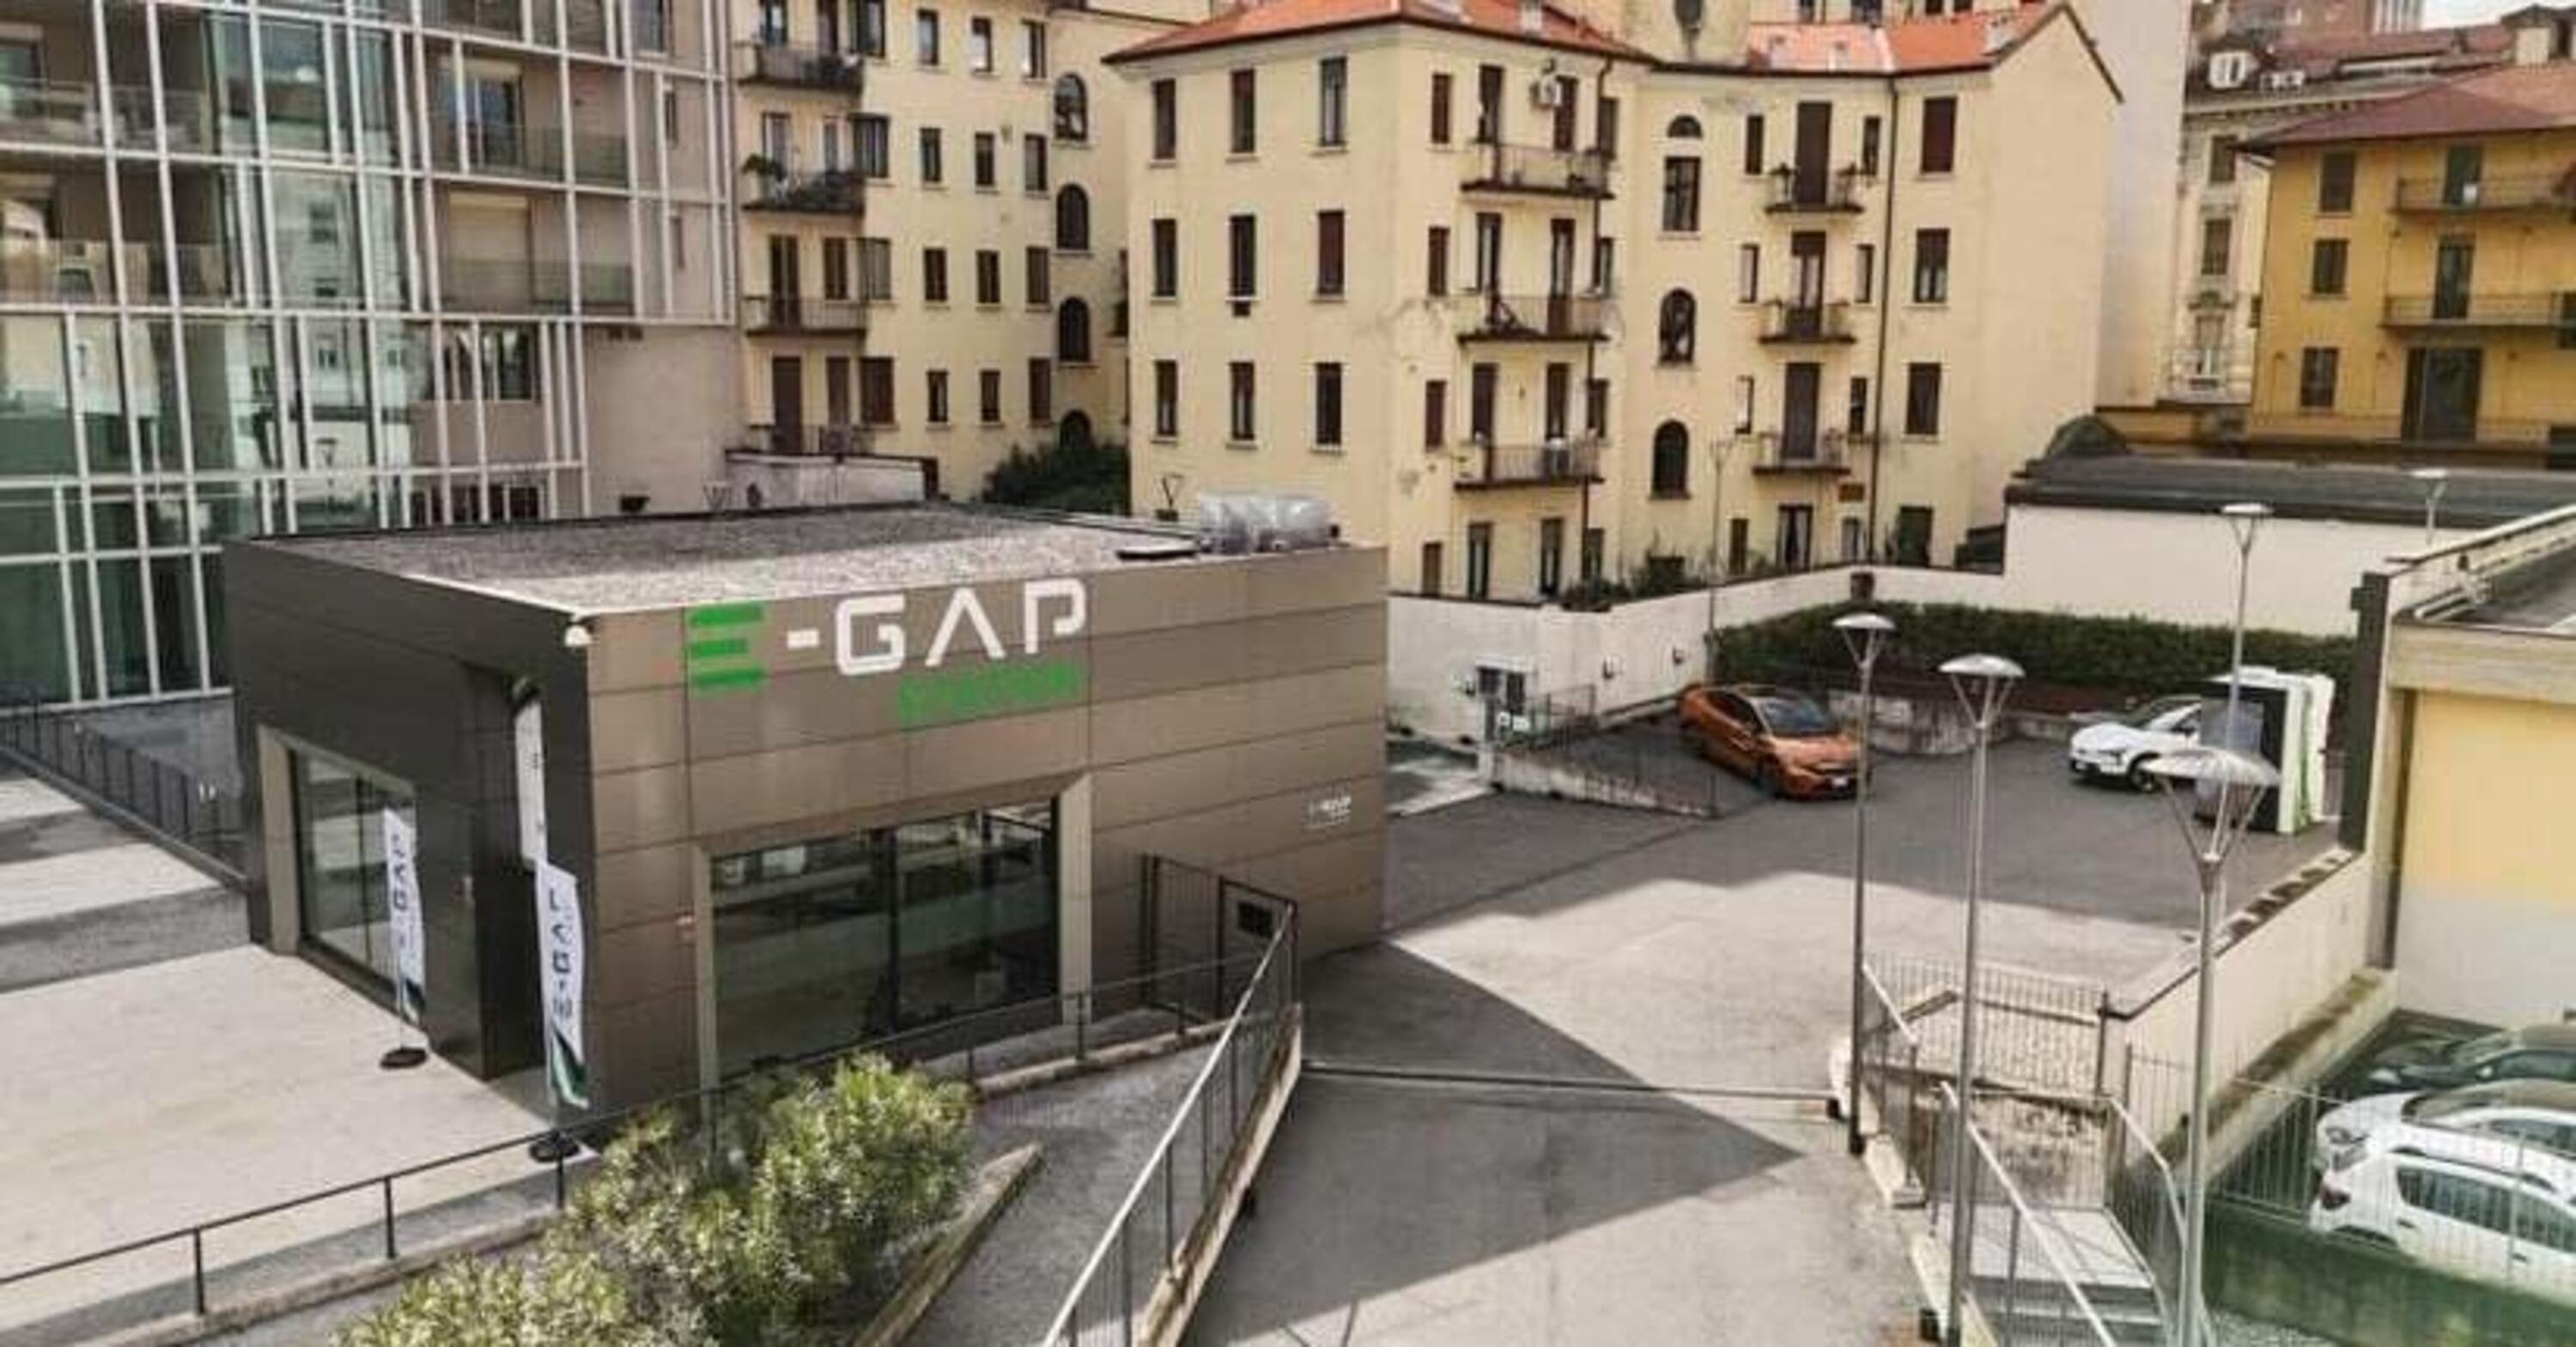 E-GAP Station: la rivoluzione della ricarica urbana elettrica in Italia